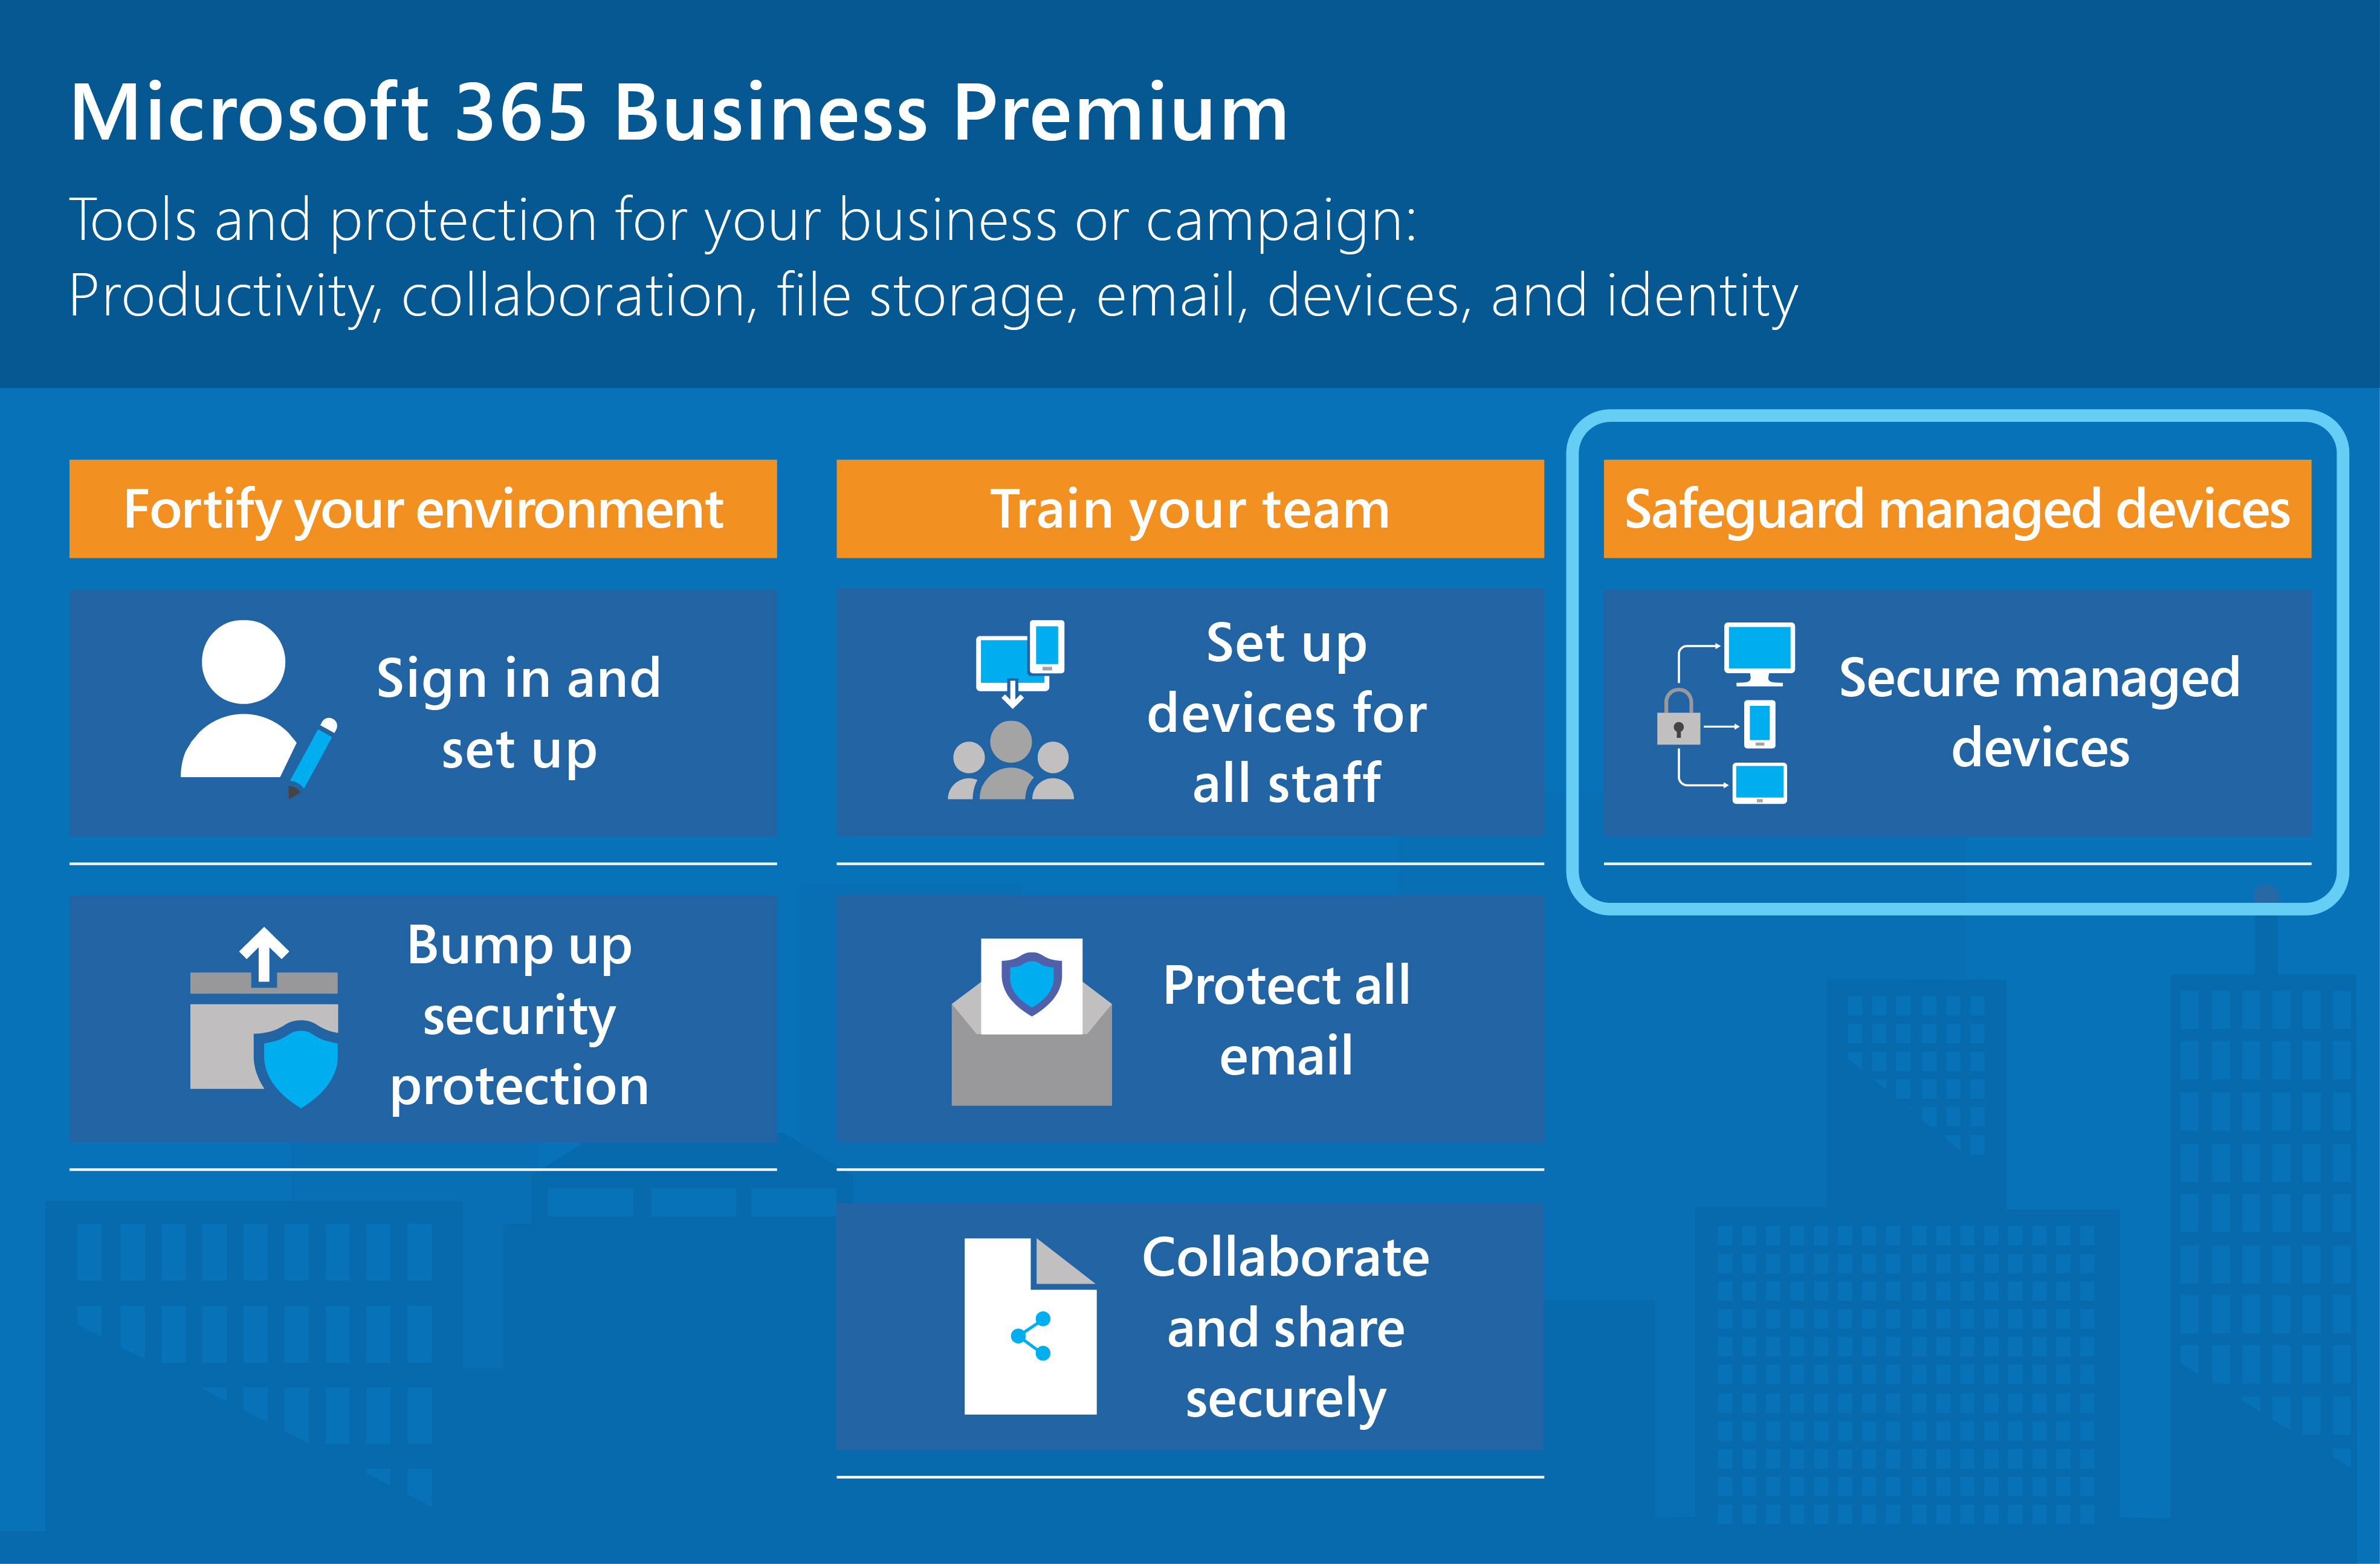 Microsoft 365 Empresa Premium protege las aplicaciones, el almacenamiento de archivos, el correo electrónico, los dispositivos y las identidades.